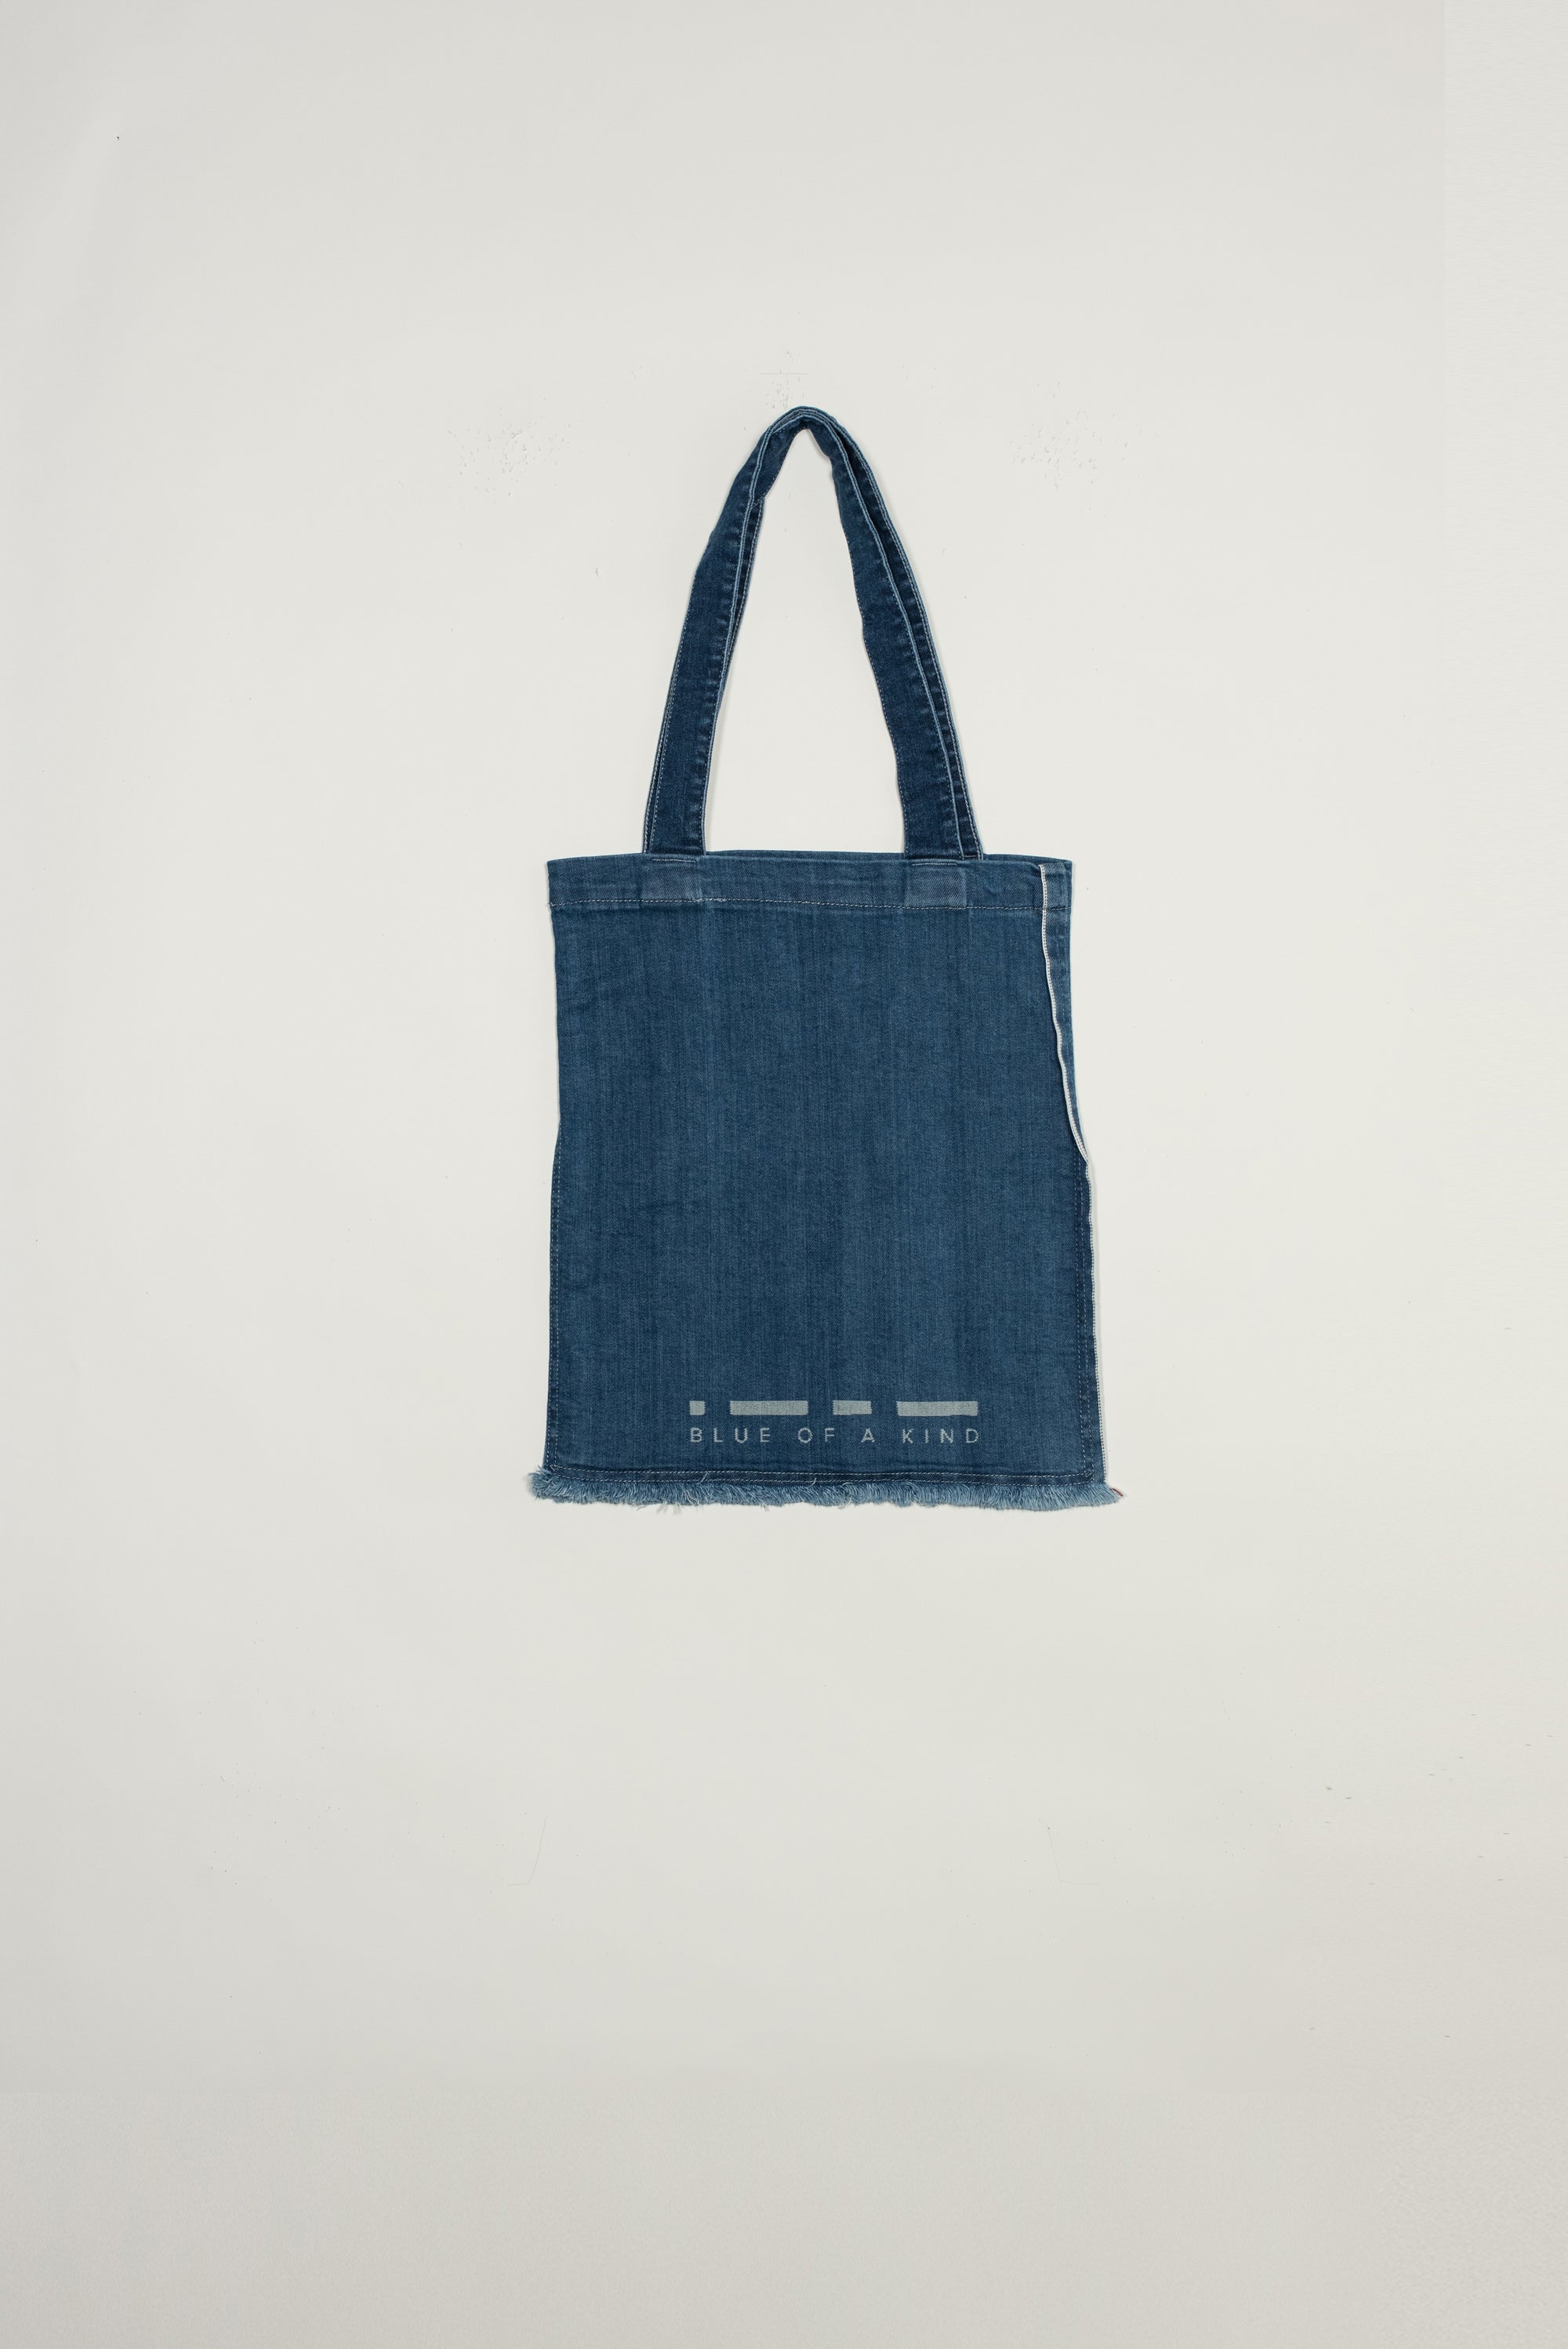 Eta - computer bag - upcycled fabric